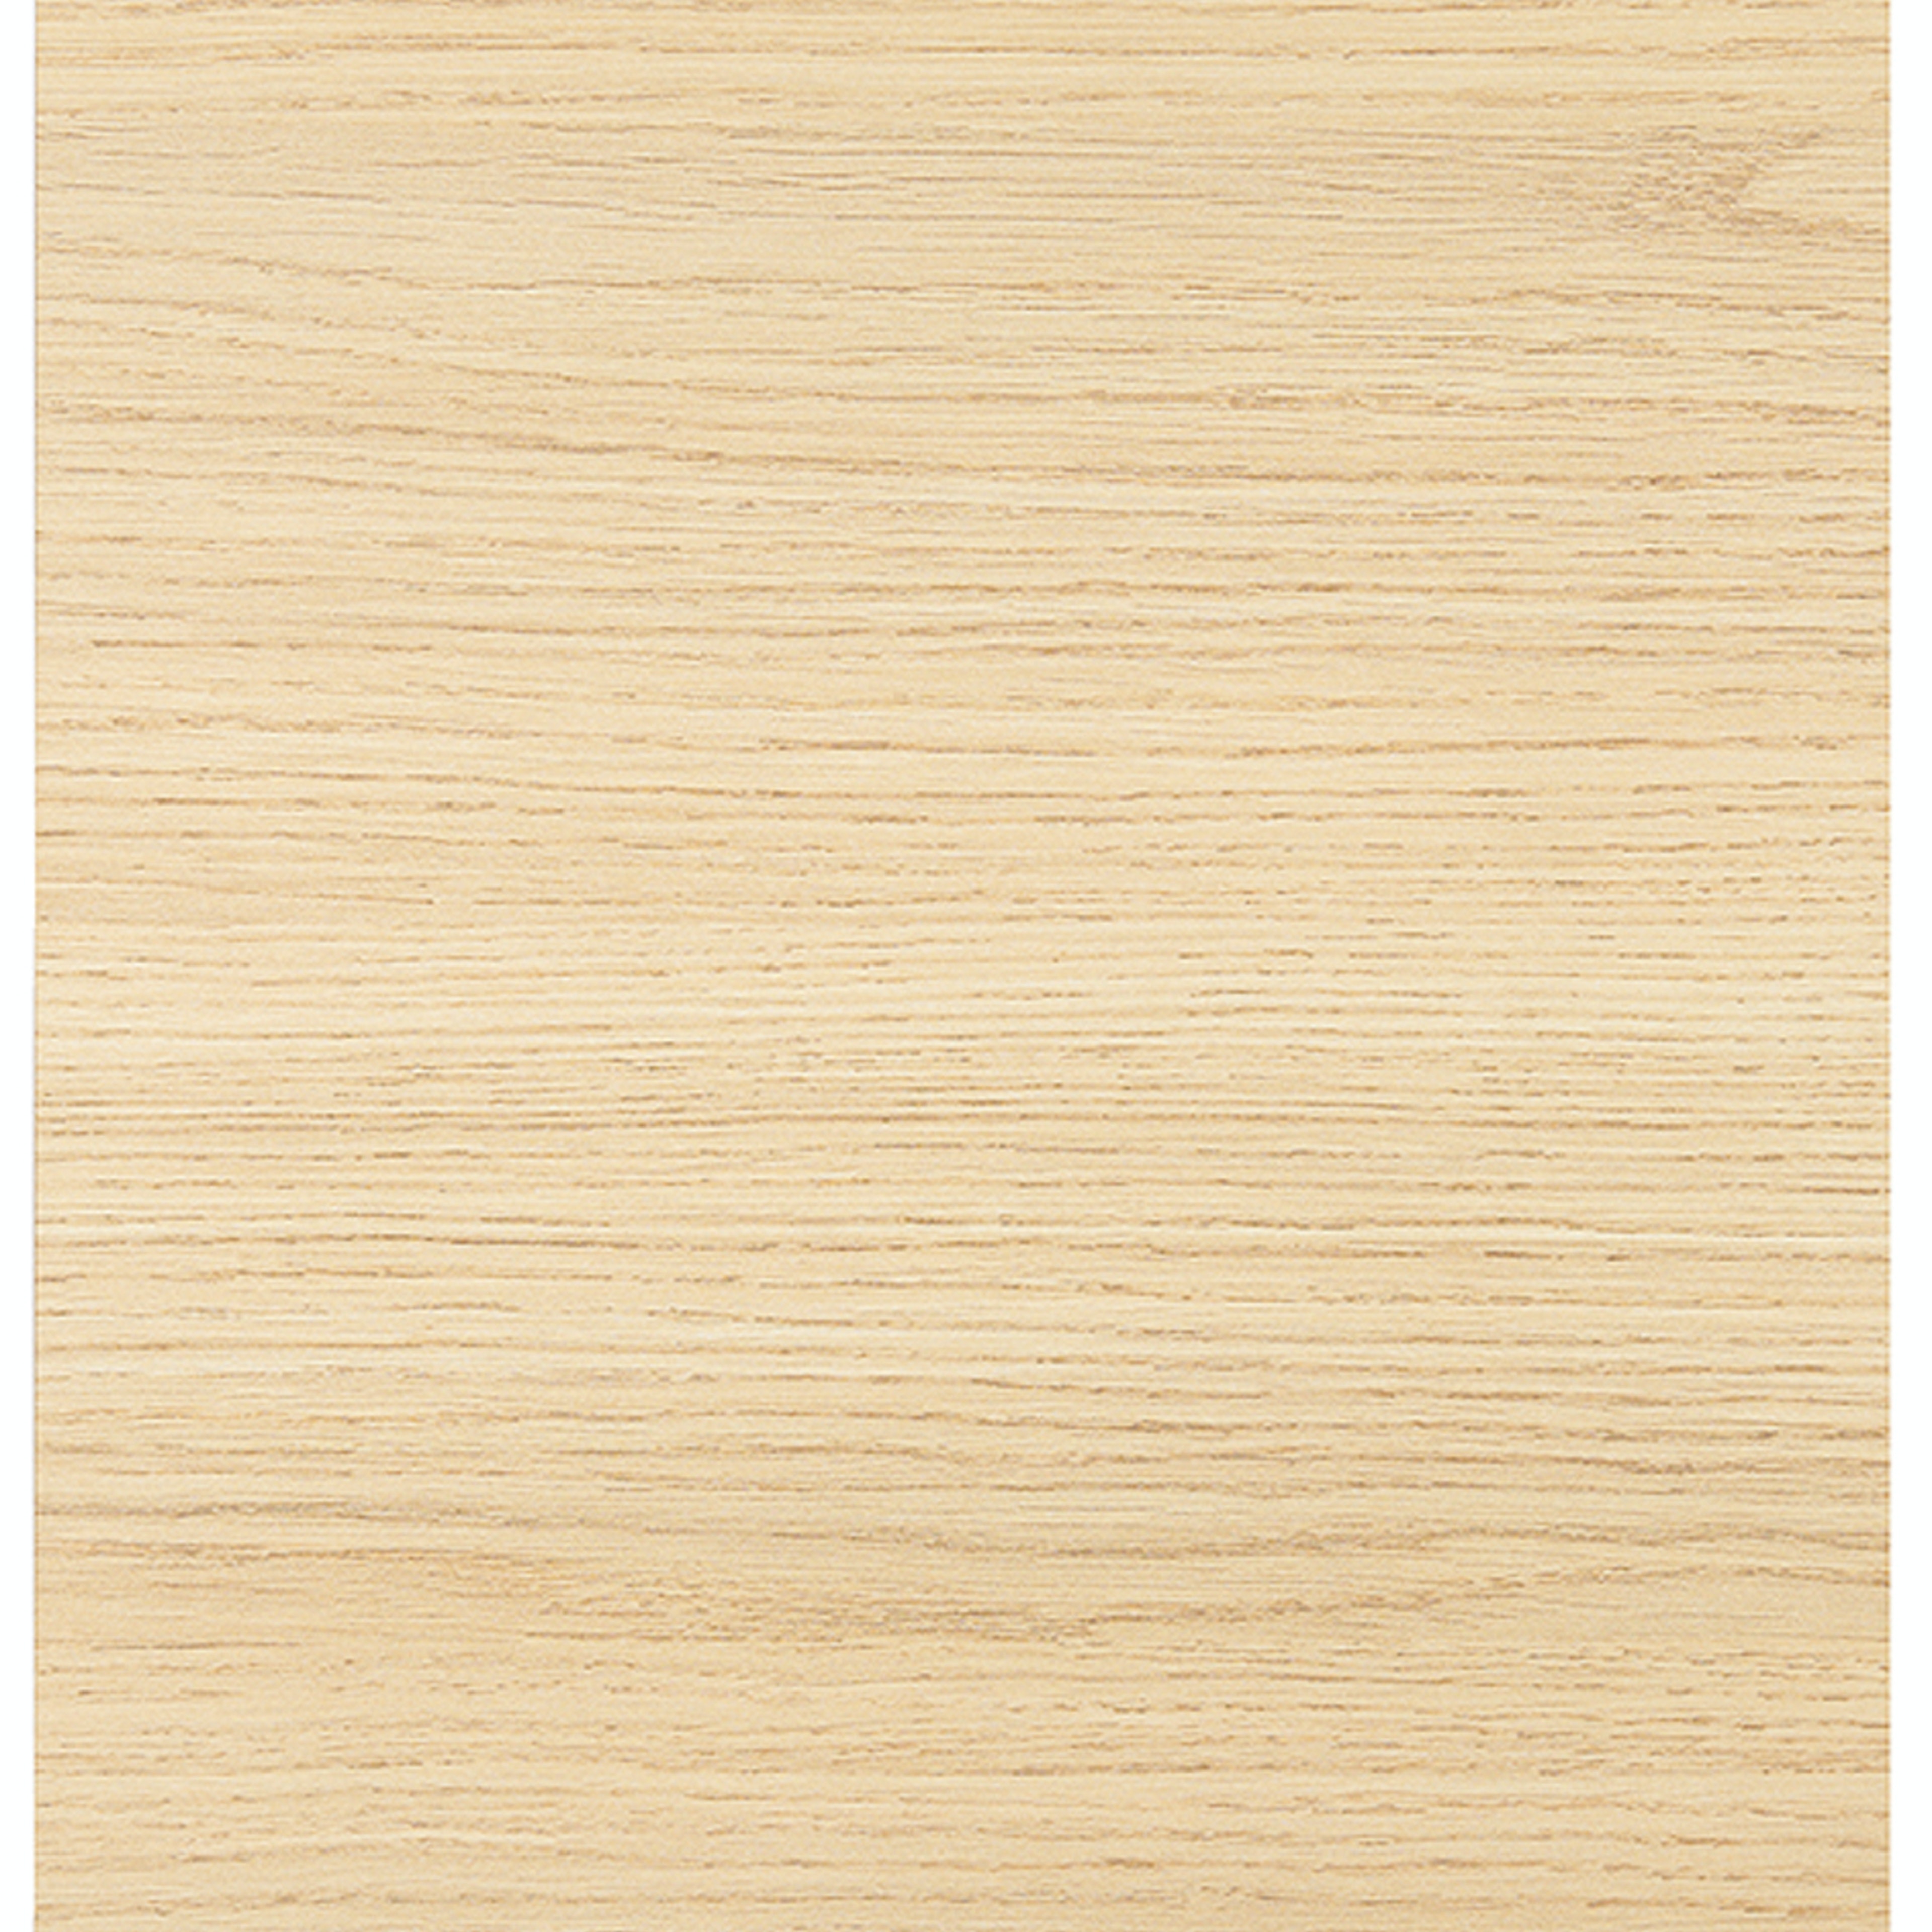 Kunststof hout decor keuken front (8010 Feneline natuur horizontaal)